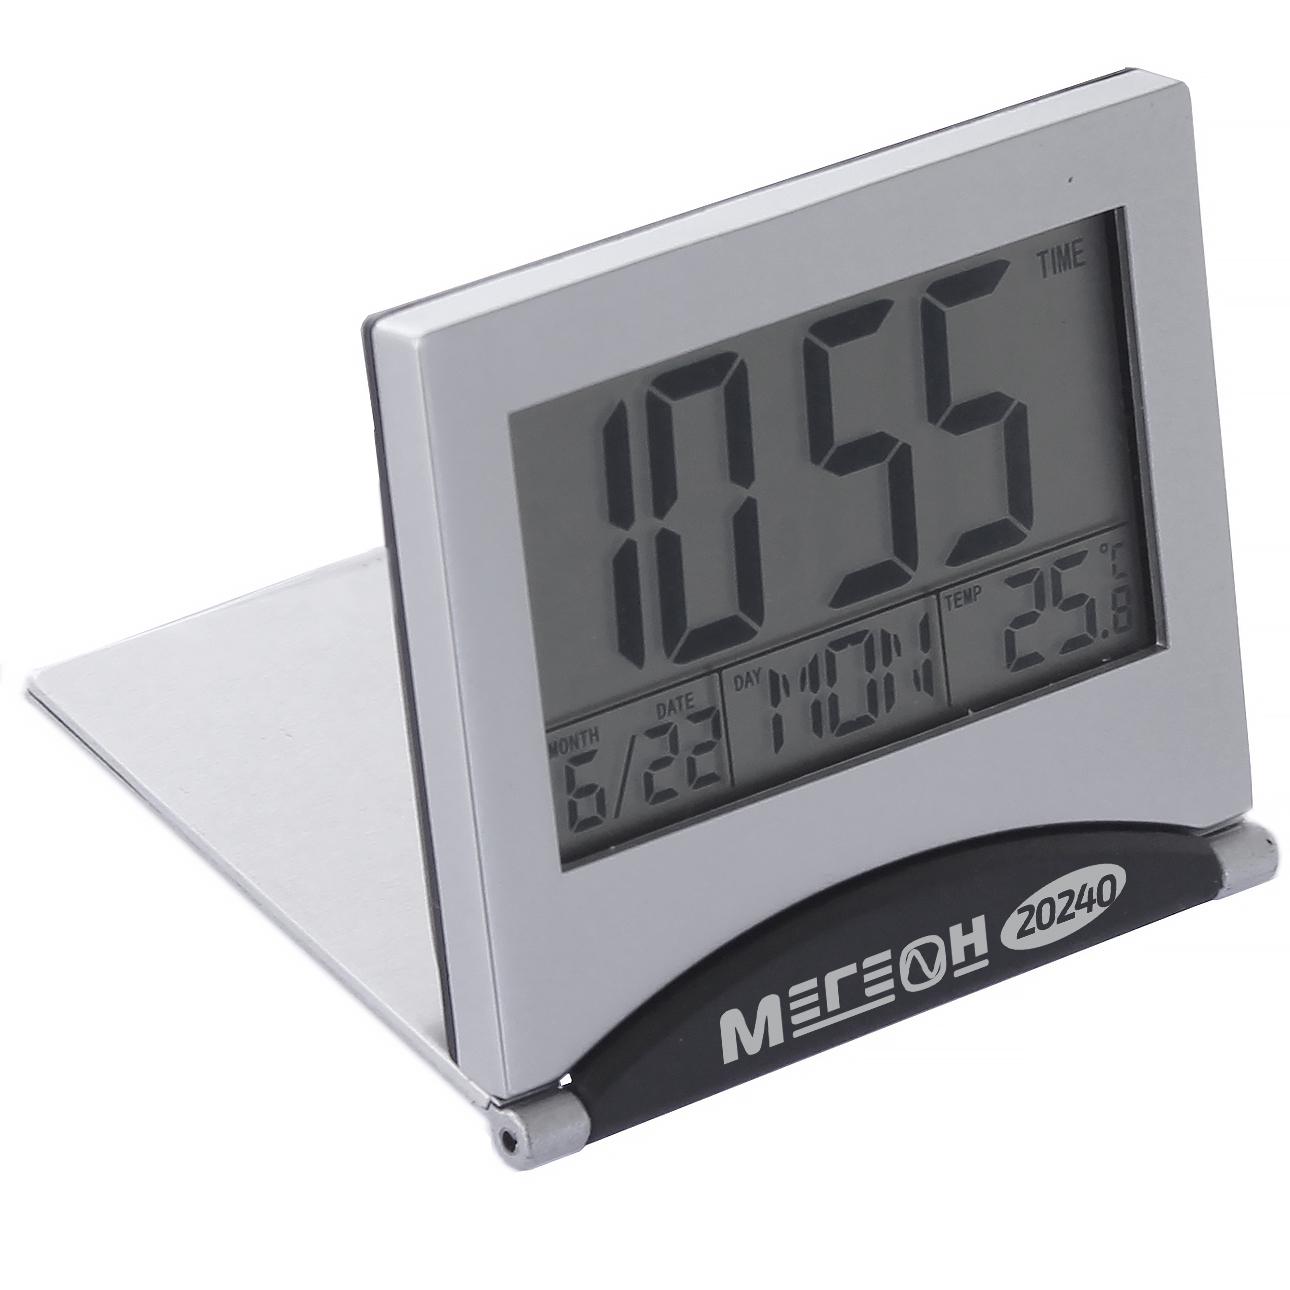 

Термометр МЕГЕОН, 20240